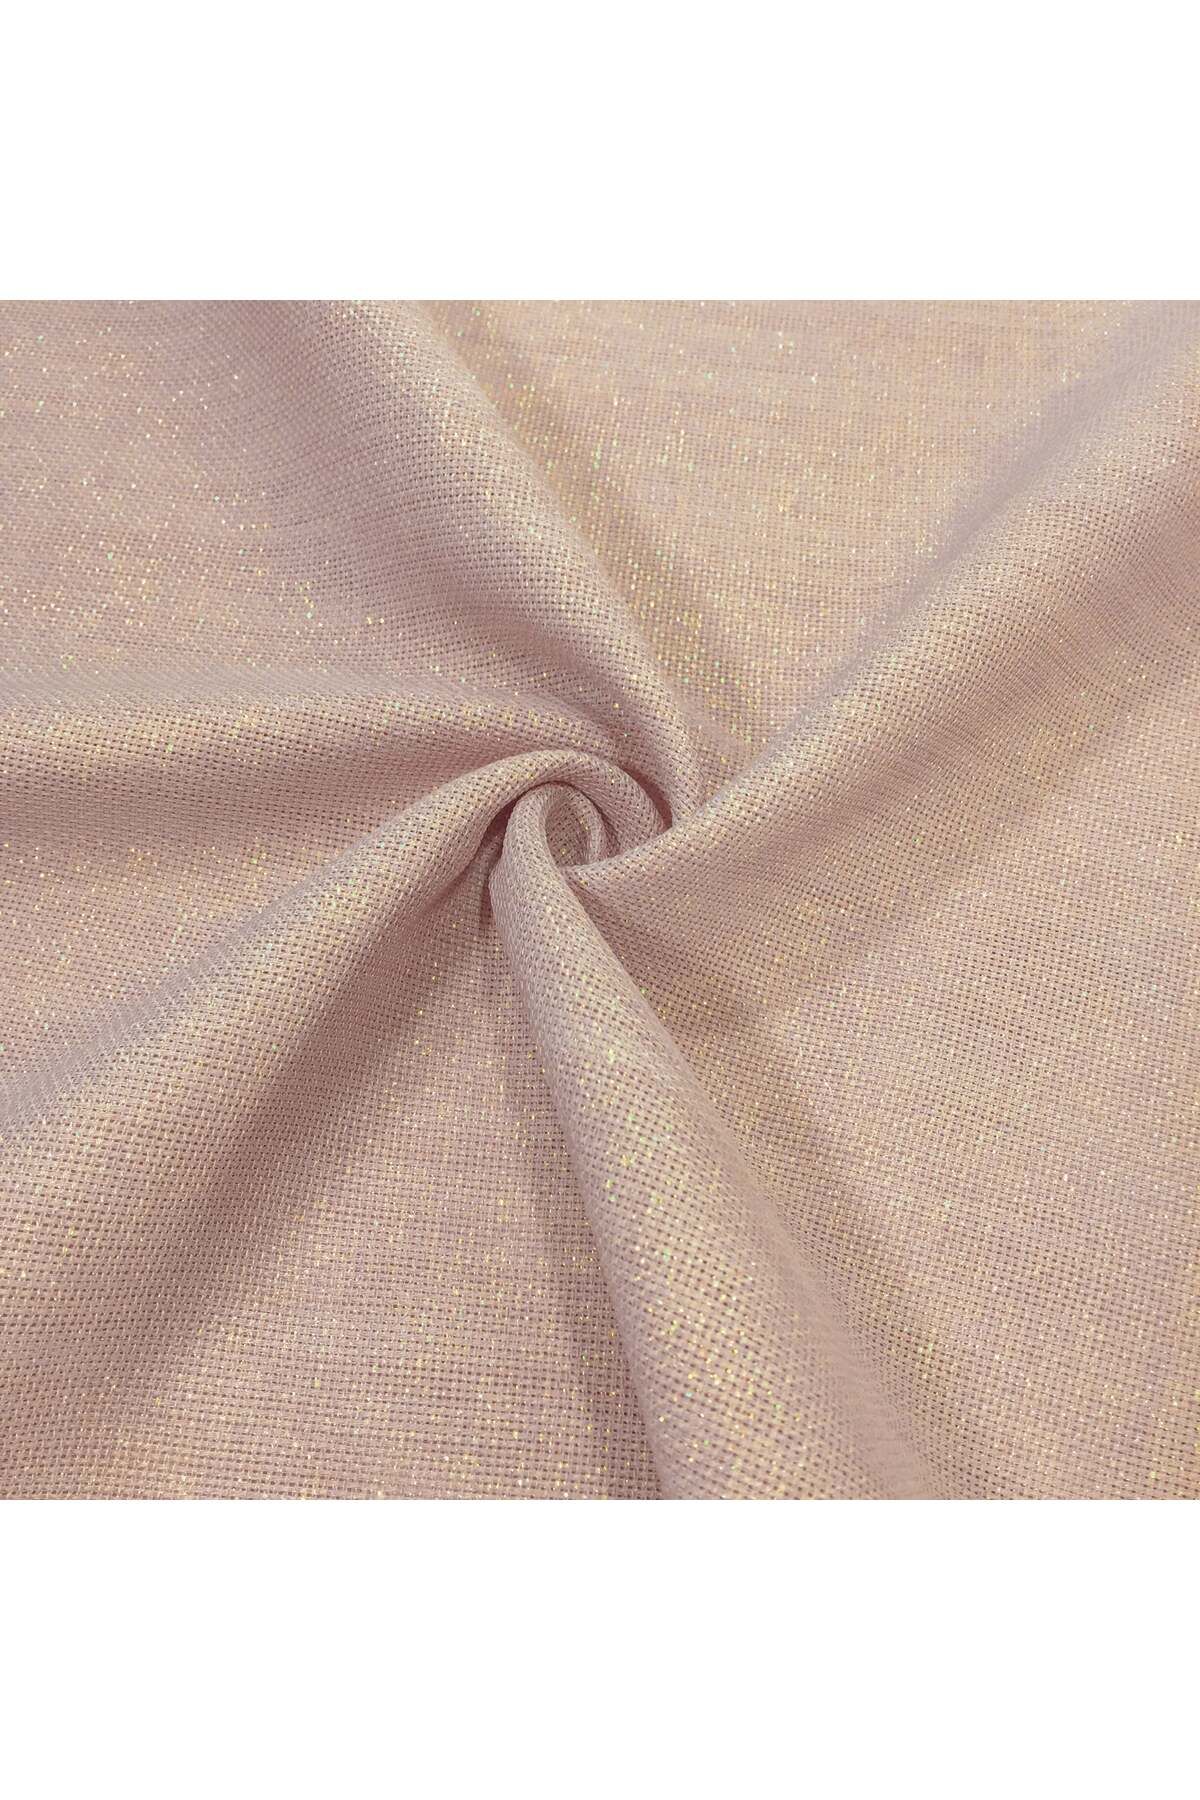 Çt Çeyizci Tekstil Simli Linen Kumaş Pudra Renk - 100x240cm